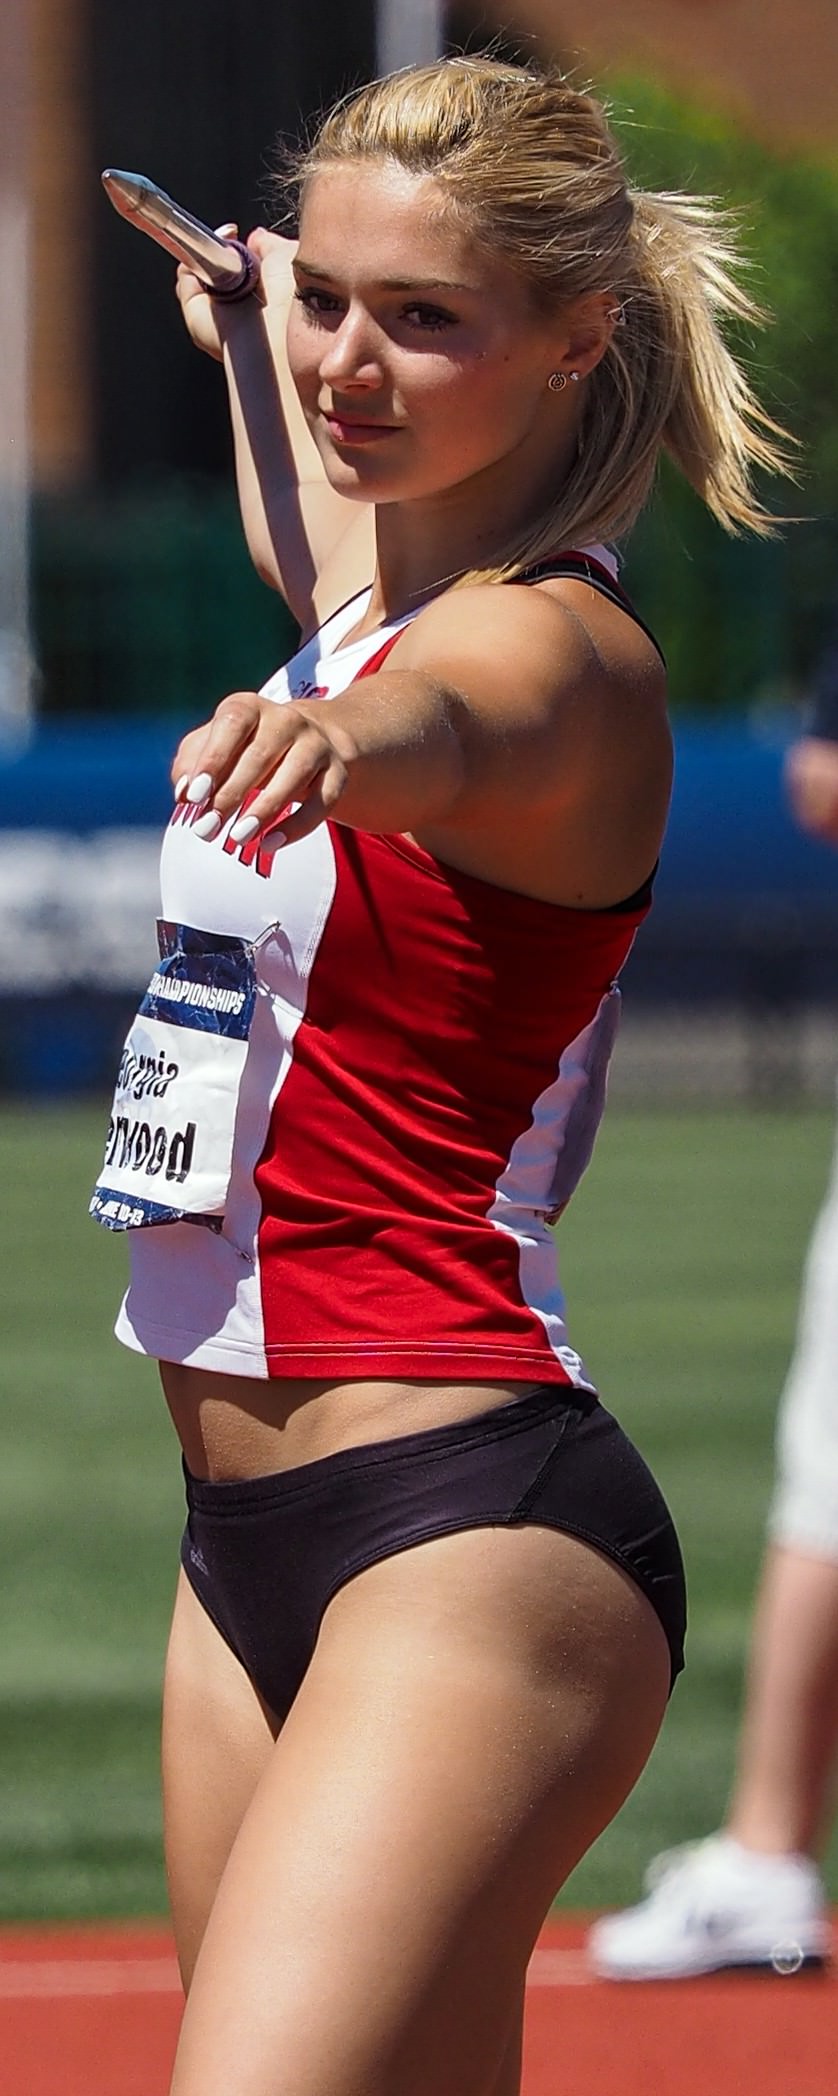 캐나다 출신의 육상 여자 7종경기 선수 - 조지아 엘렌우드(Georgia Ellenwood)